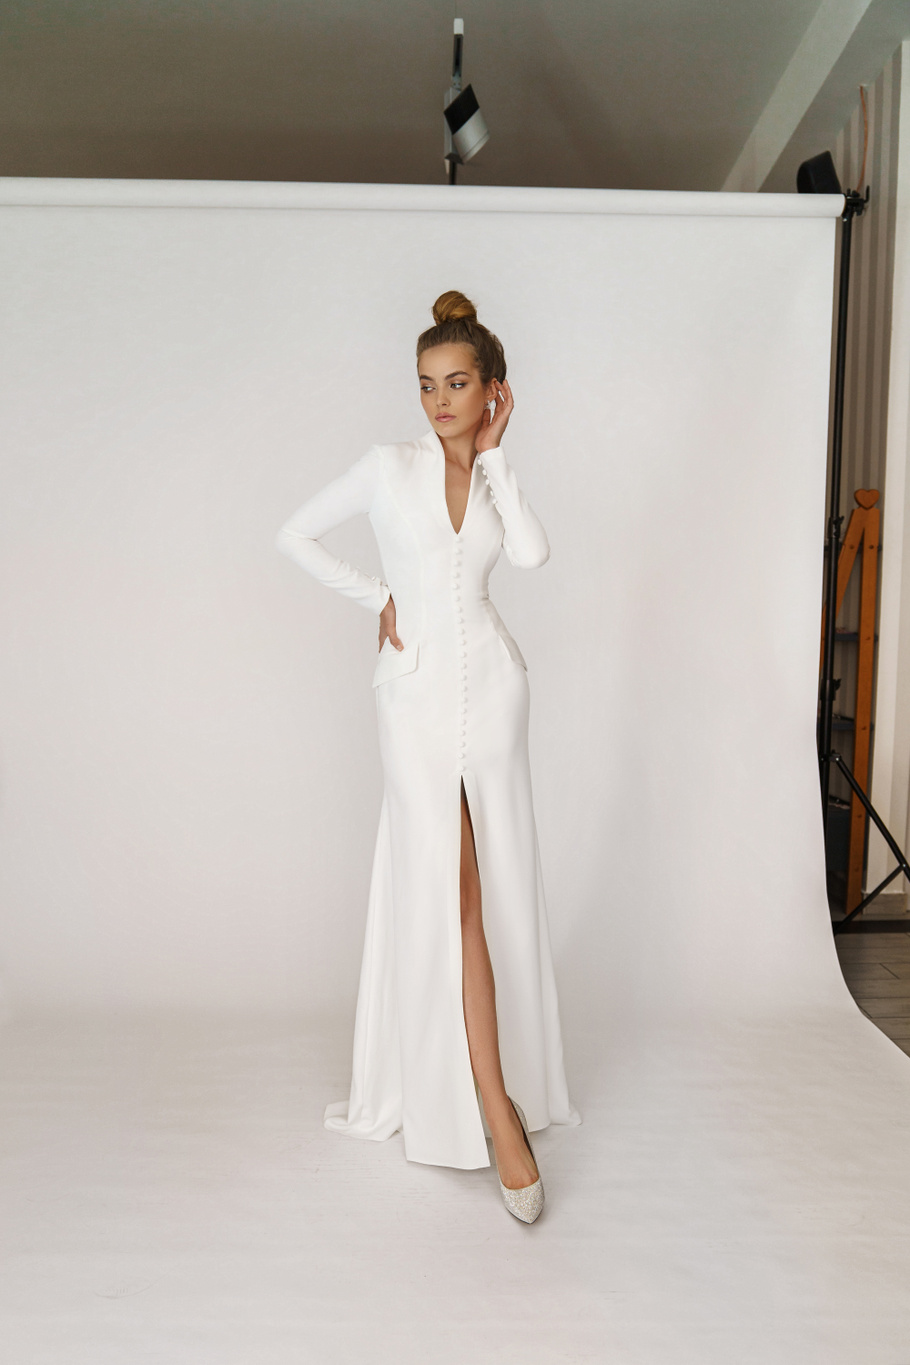 Свадебное платье «Олсен» Марта — купить в Москве платье Олсен из коллекции 2021 года